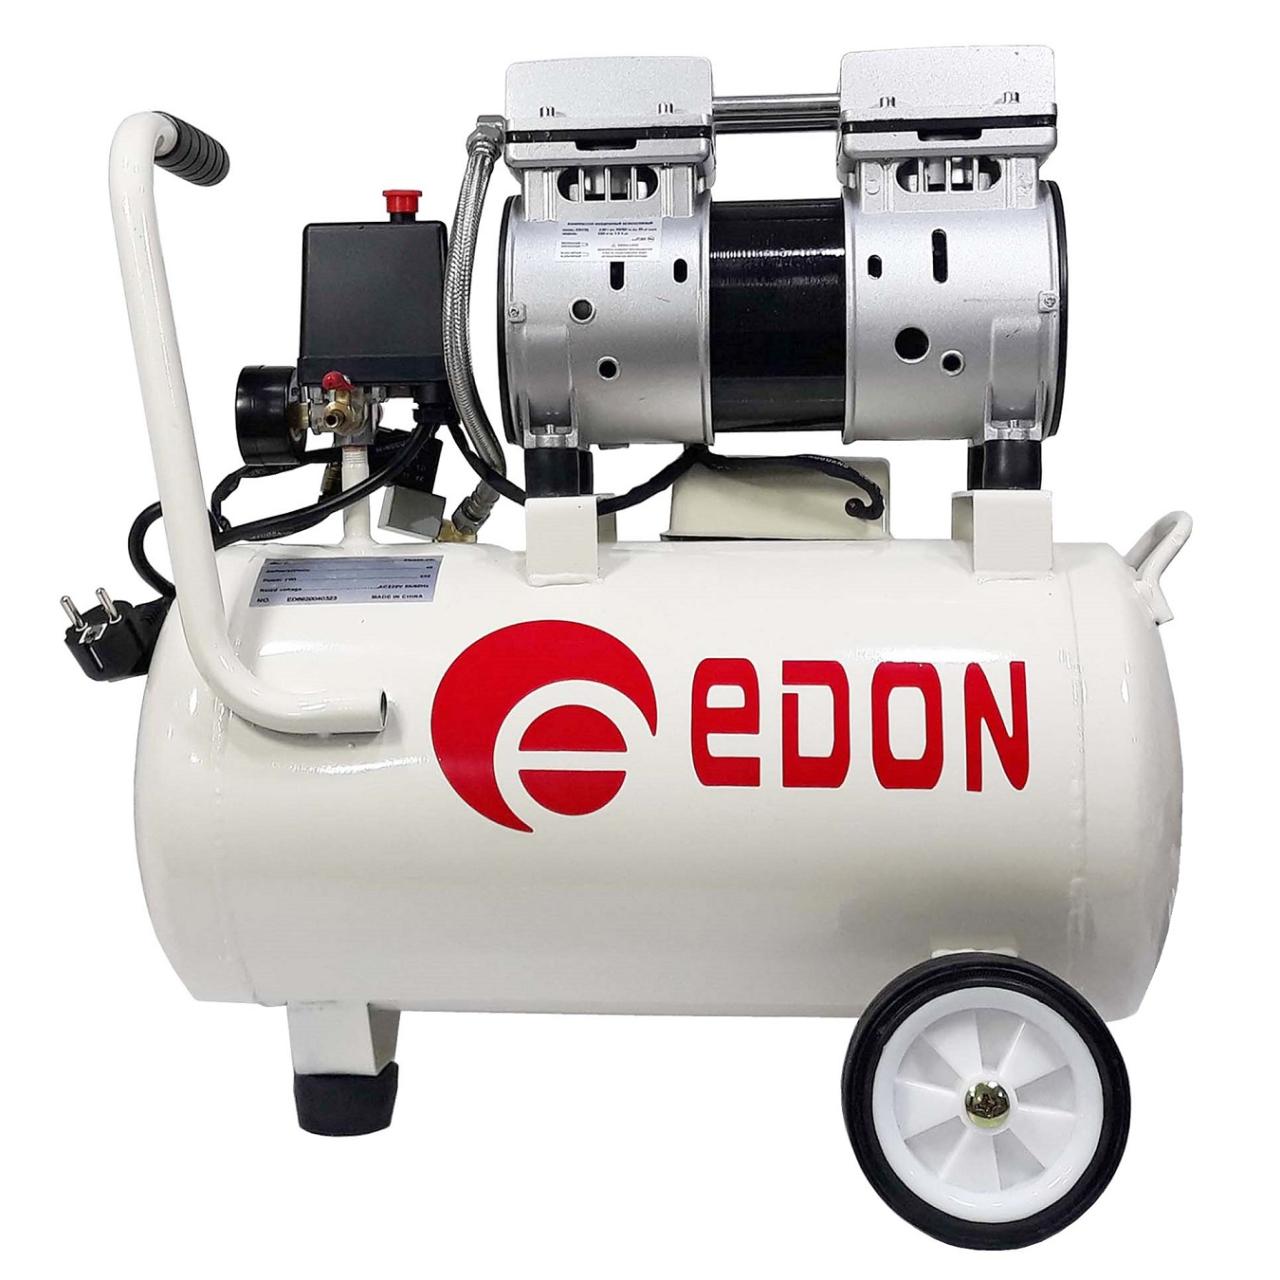 Edon air compressor